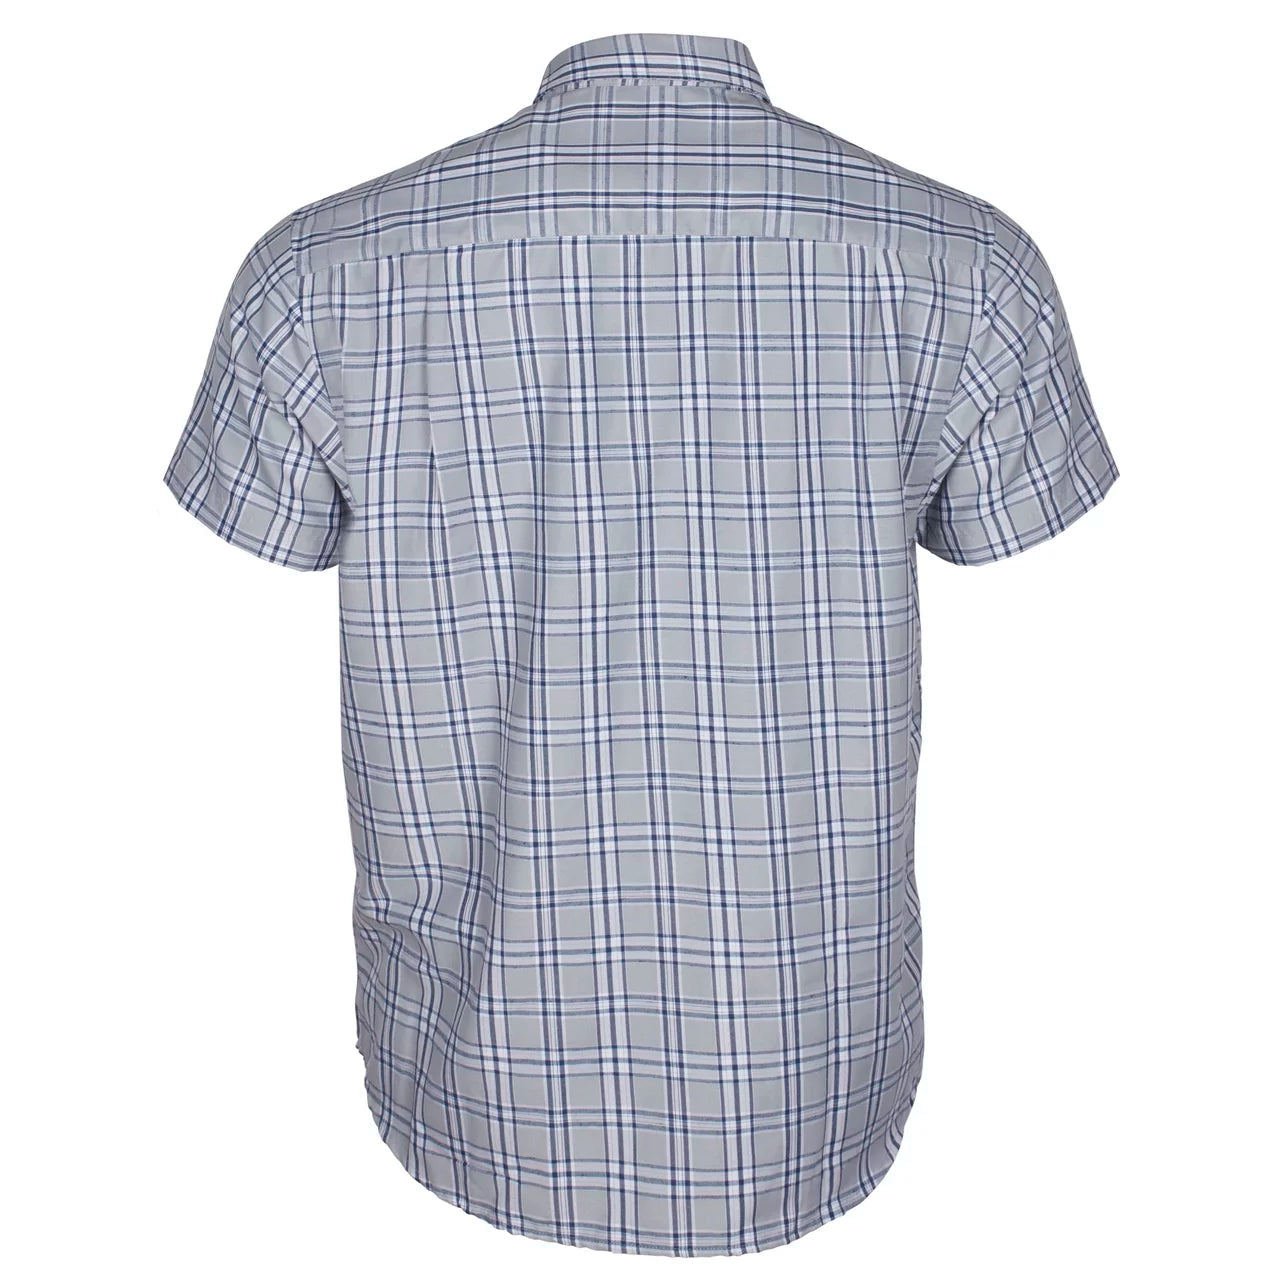 Short Sleeve Summer Shirt 5232